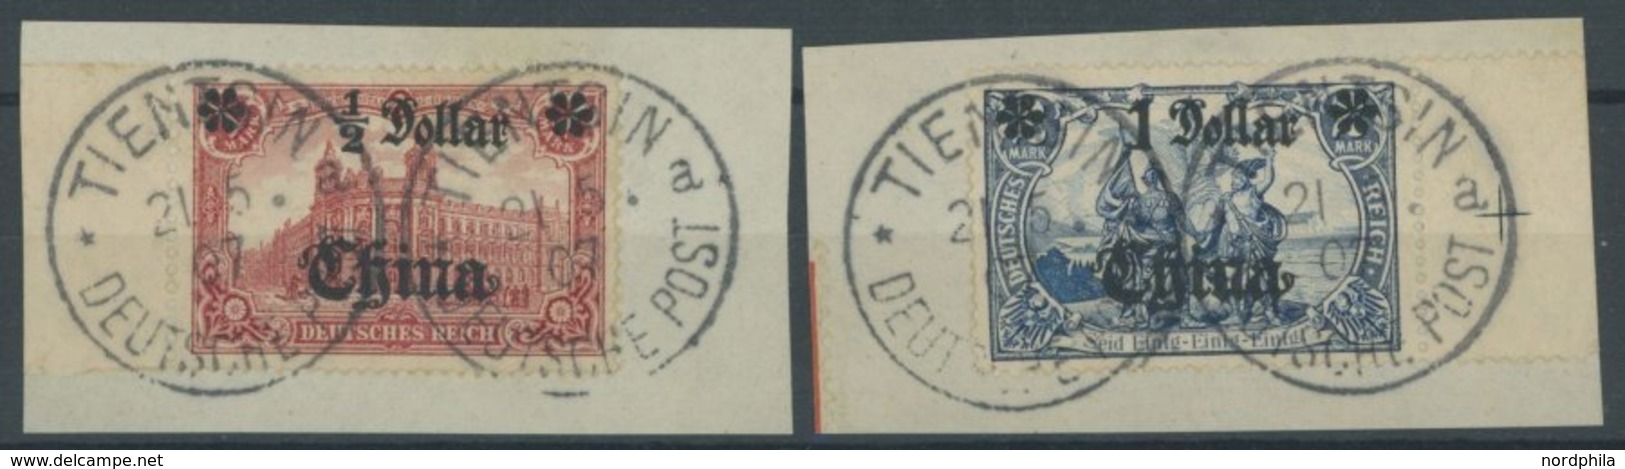 DP CHINA 44IAI,45IAII BrfStk, 1906, 1/2 D. Auf 1 M. Und 1 D. Auf 2 M., Mit Wz., Je Auf Briefstück, Randstücke, Pracht, M - Deutsche Post In China